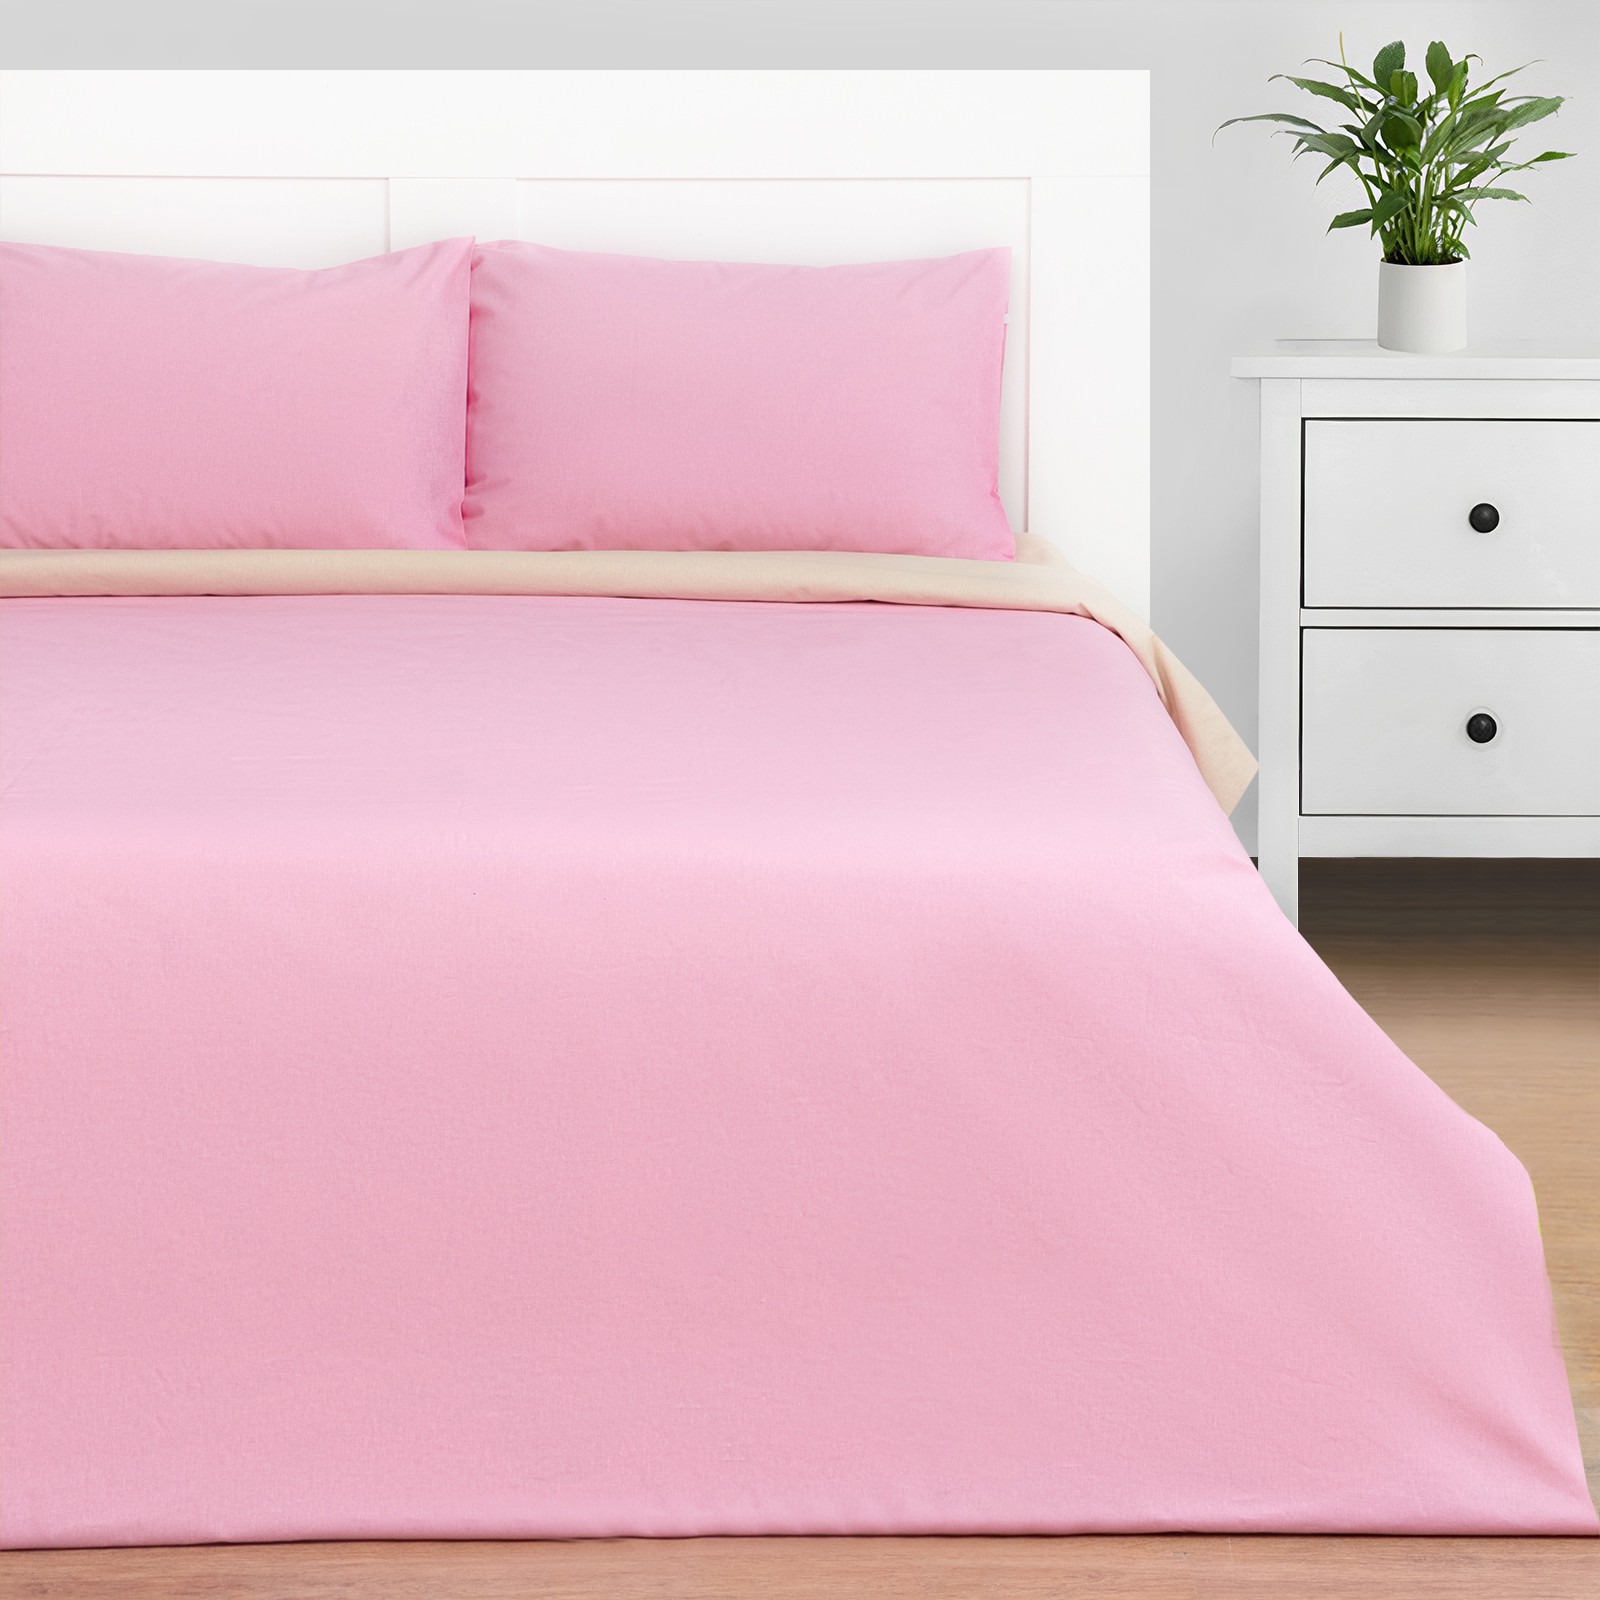 Постельное белье Pink sky цвет: бежевый, розовый (2 спал.), размер 50х70 (2 шт) tel909321 Постельное белье Pink sky цвет: бежевый, розовый (2 спал.) - фото 1